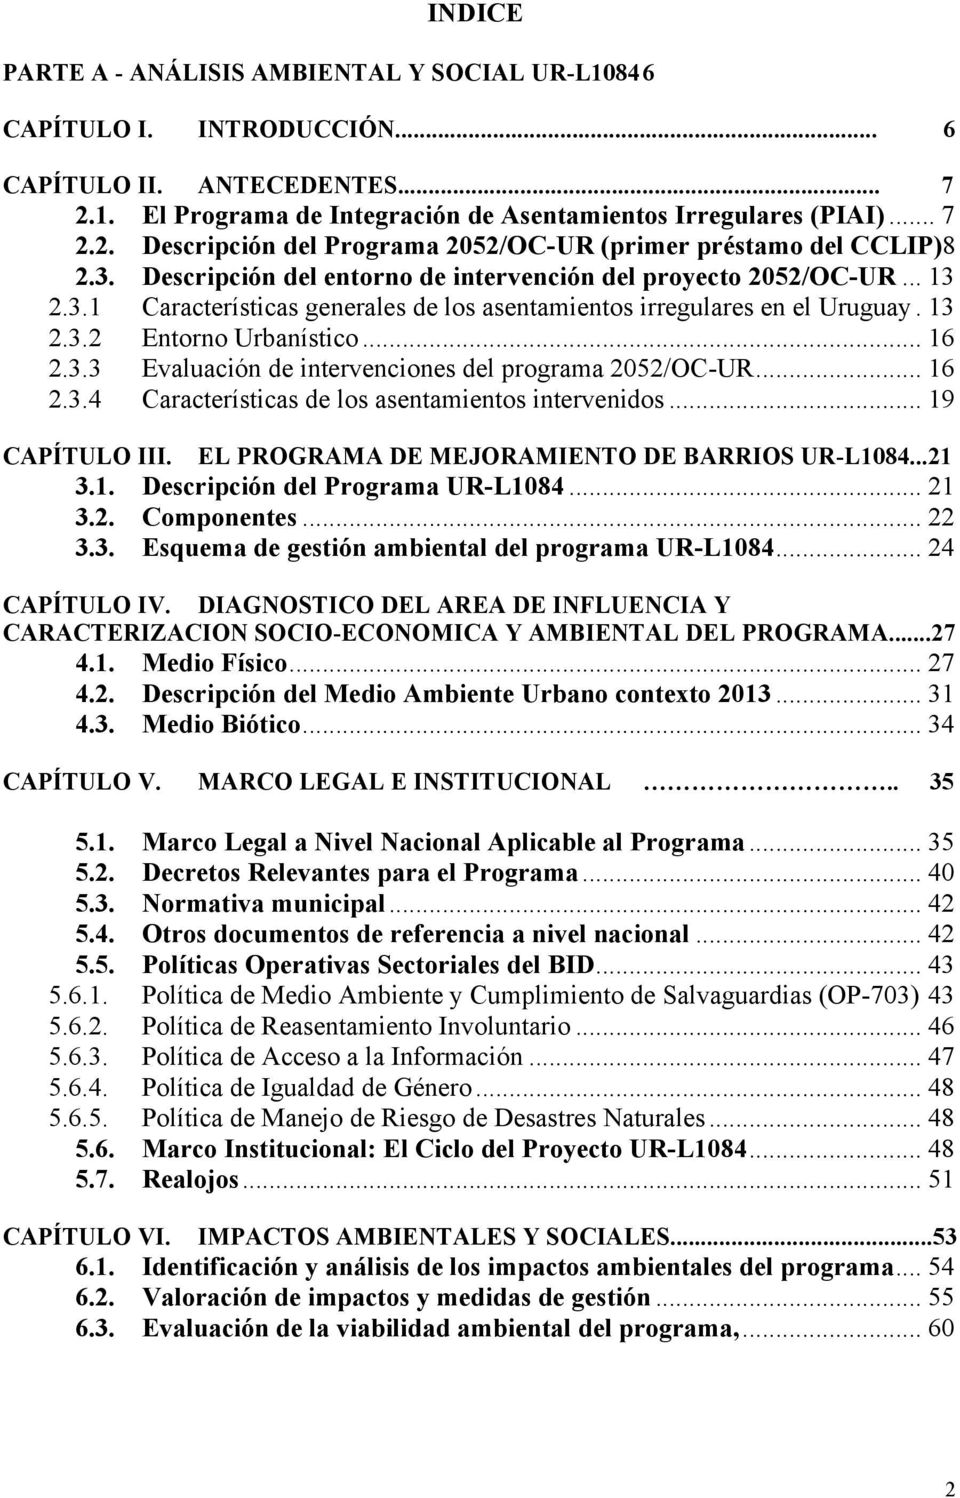 .. 16 2.3.4 Características de los asentamientos intervenidos... 19 CAPÍTULO III. EL PROGRAMA DE MEJORAMIENTO DE BARRIOS UR-L1084...21 3.1. Descripción del Programa UR-L1084... 21 3.2. Componentes.